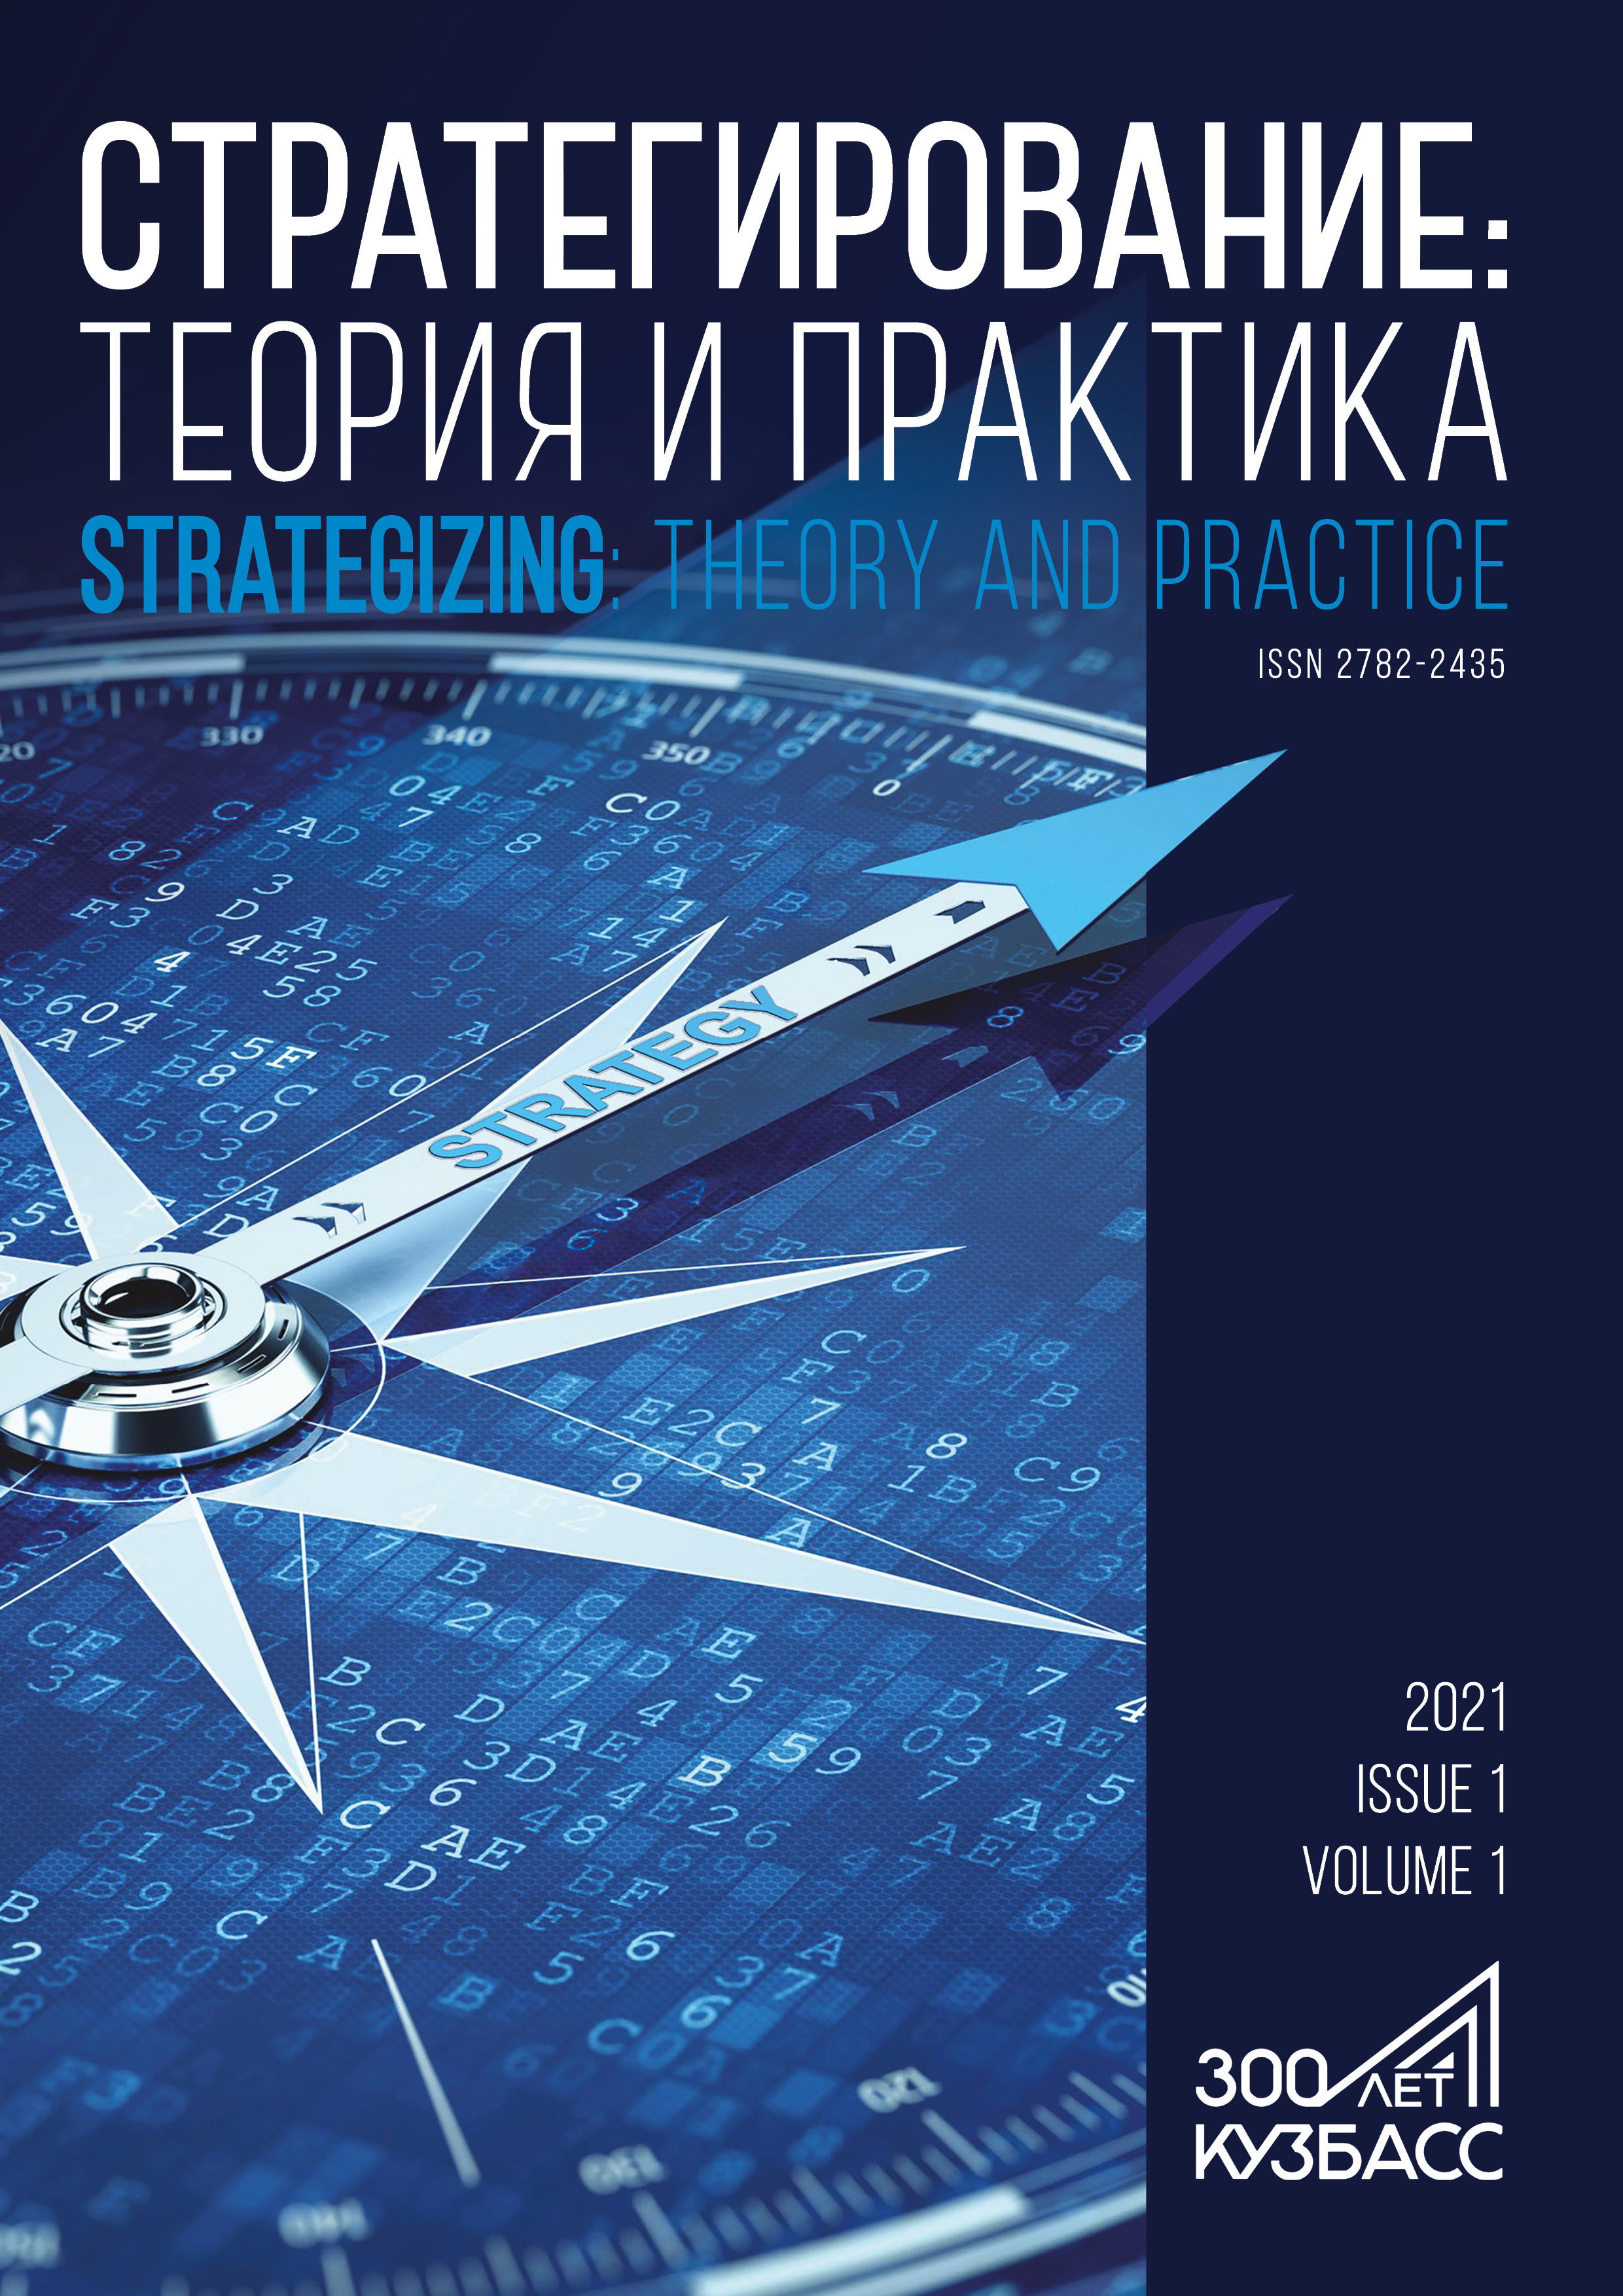             15-летняя стратегия и 50-летняя перспектива в девятитомнике Библиотека «Стратегия Кузбасса»
    